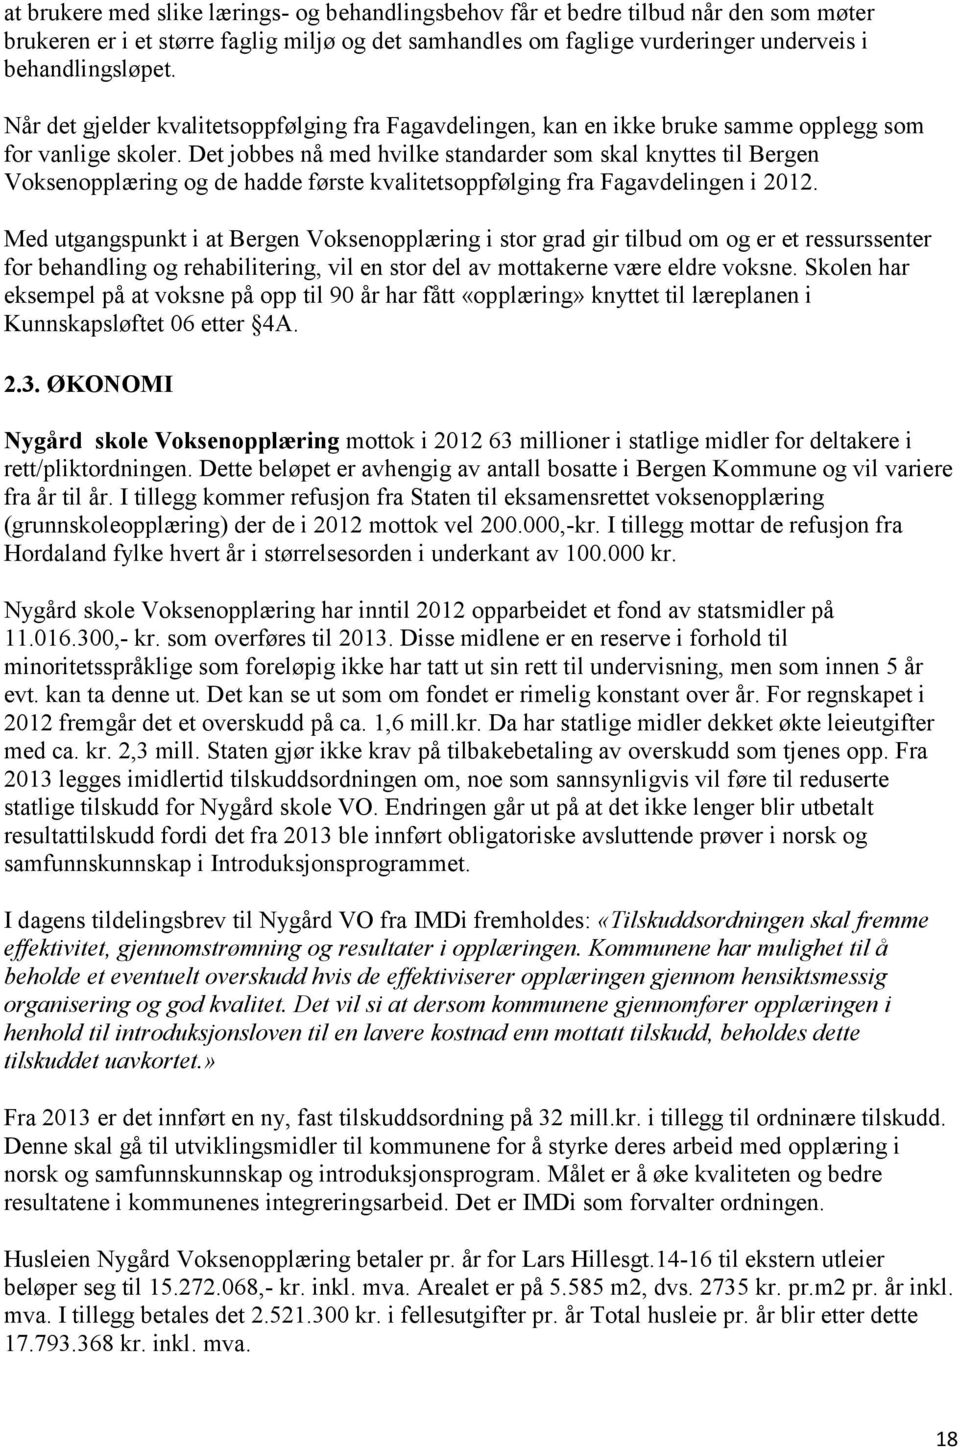 Det jobbes nå med hvilke standarder som skal knyttes til Bergen Voksenopplæring og de hadde første kvalitetsoppfølging fra Fagavdelingen i 2012.